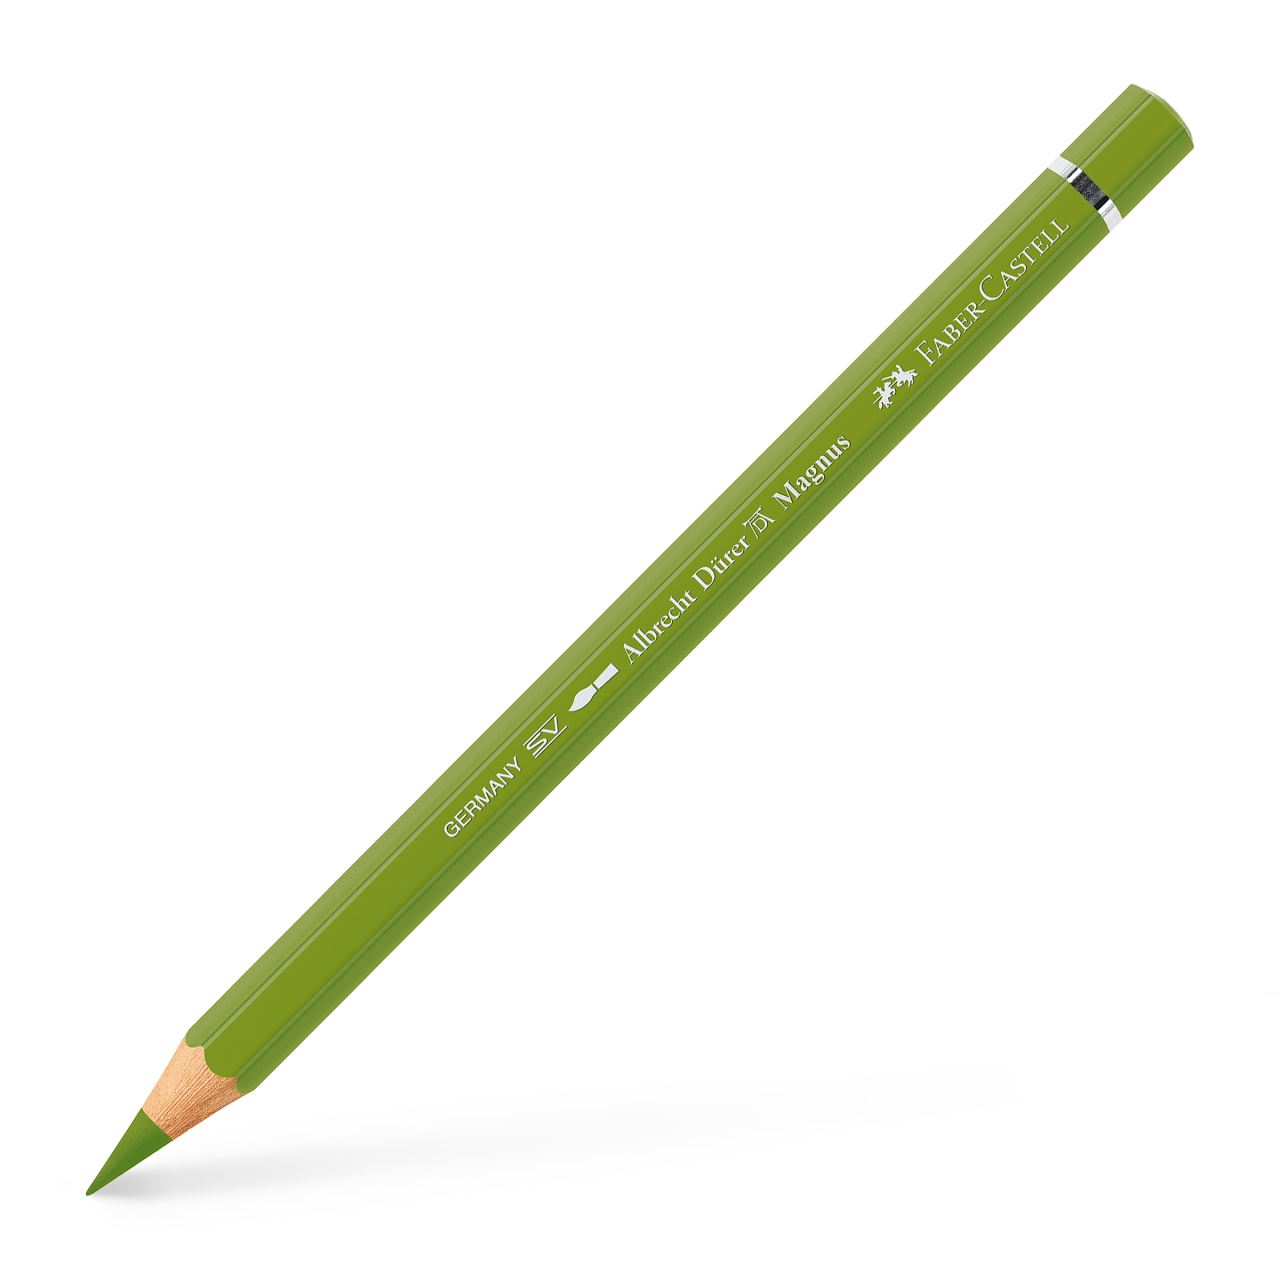 Faber-Castell - アルブレヒト･デューラー マグナス水彩色鉛筆 アースイエローグリーン